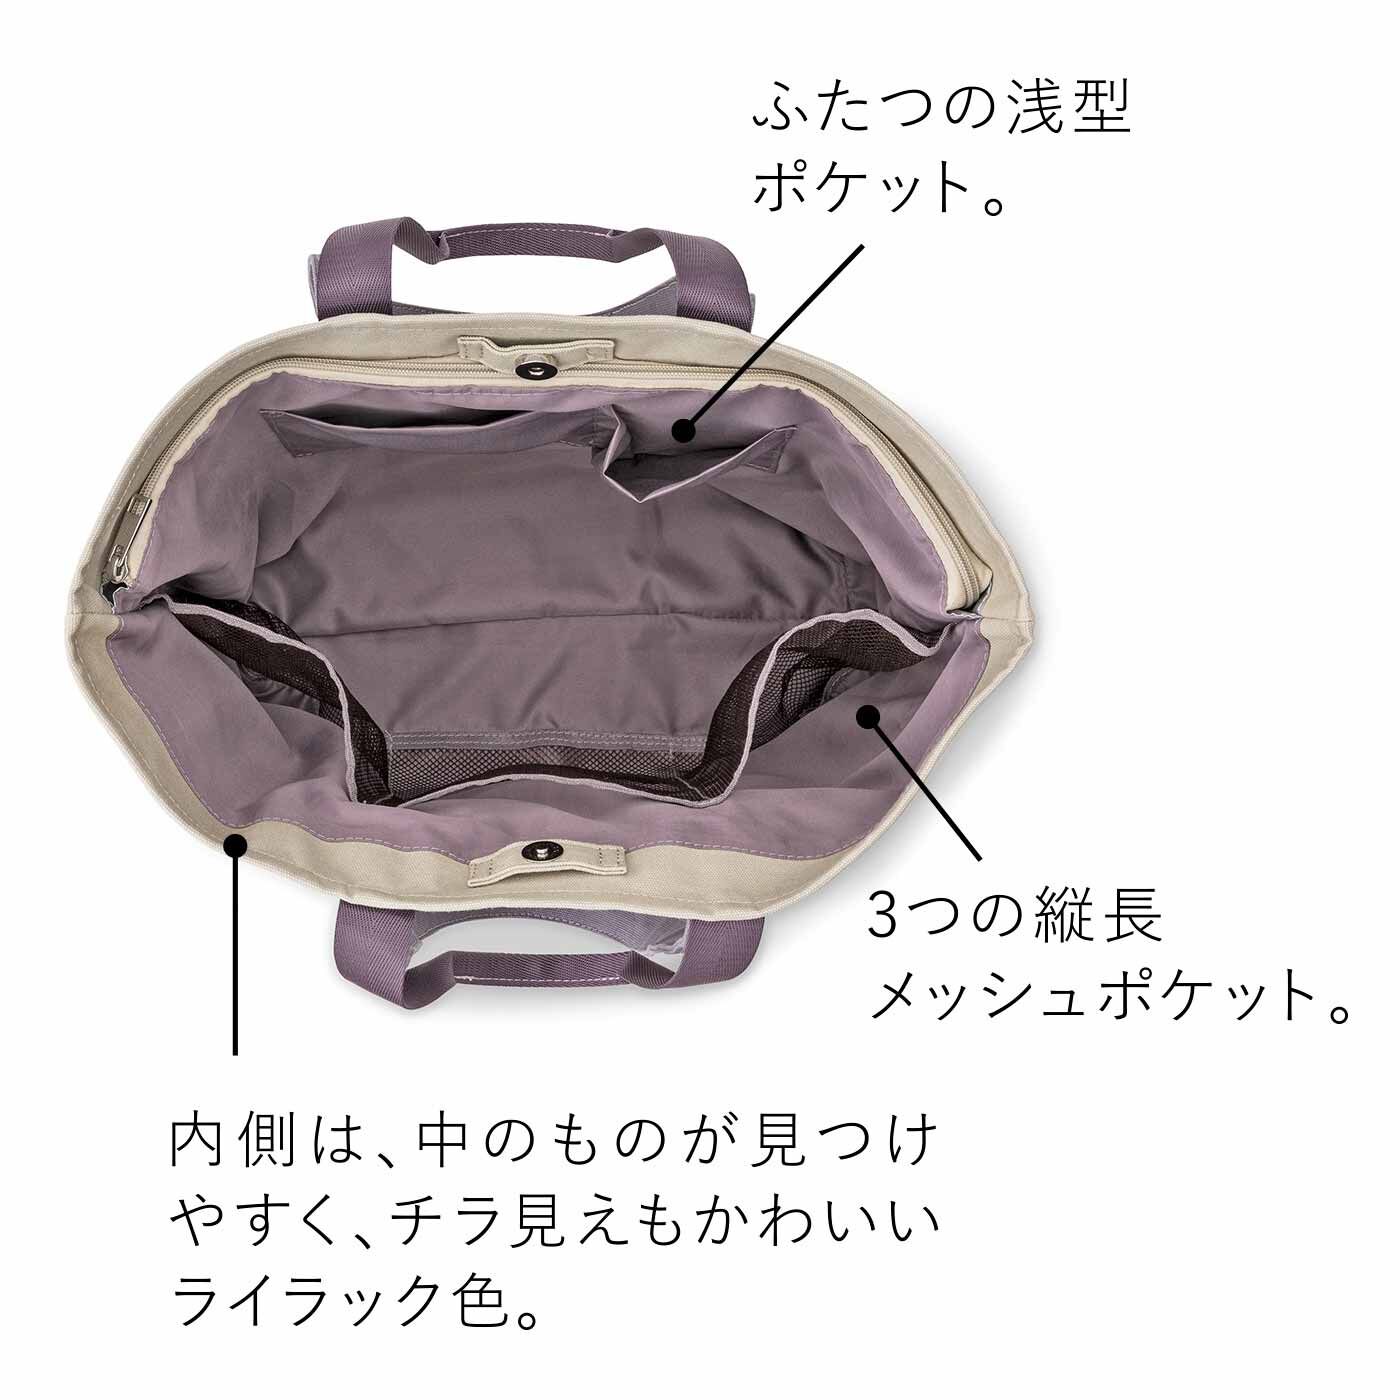 Real Stock|ラミプリュス　肩掛けと手持ちのダブルハンドル 秘密の保冷部屋がある 帆布トートバッグ|通常のスペース　幅広まちでたっぷり入り、3つのメッシュのポケットとふたつのポケットで仕分けもOK。